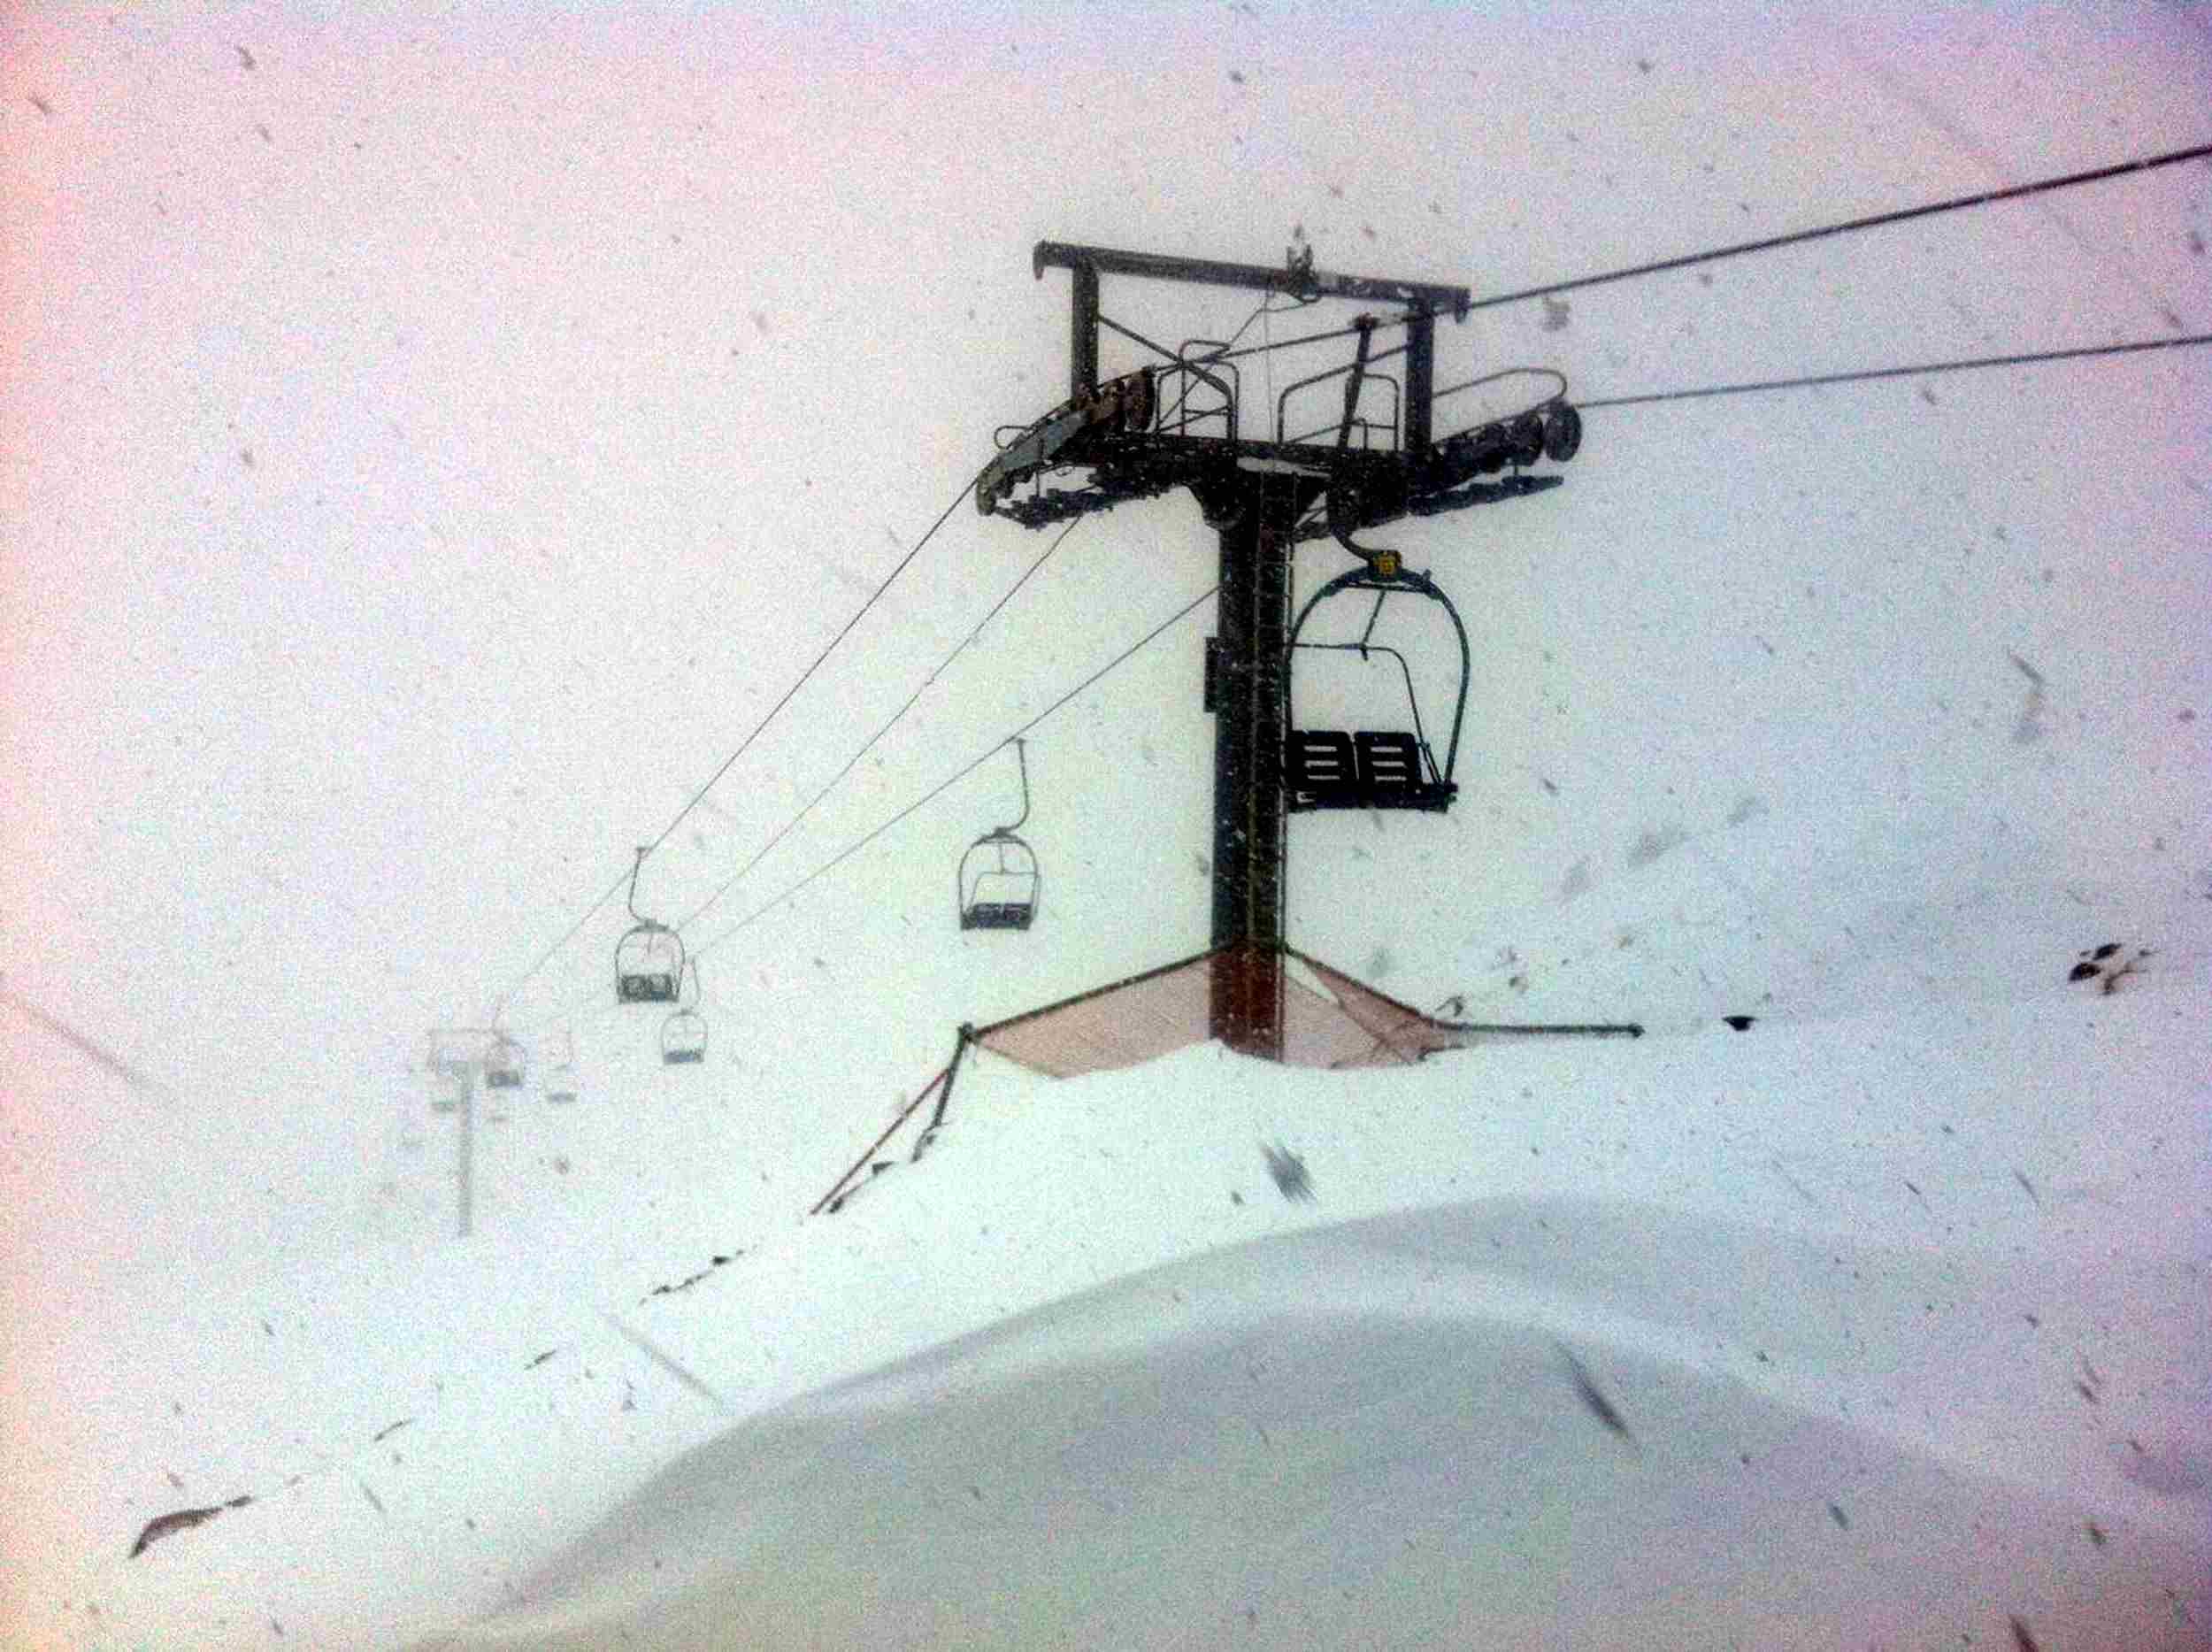 La nevada cierra estaciones de esquí y corta carreteras